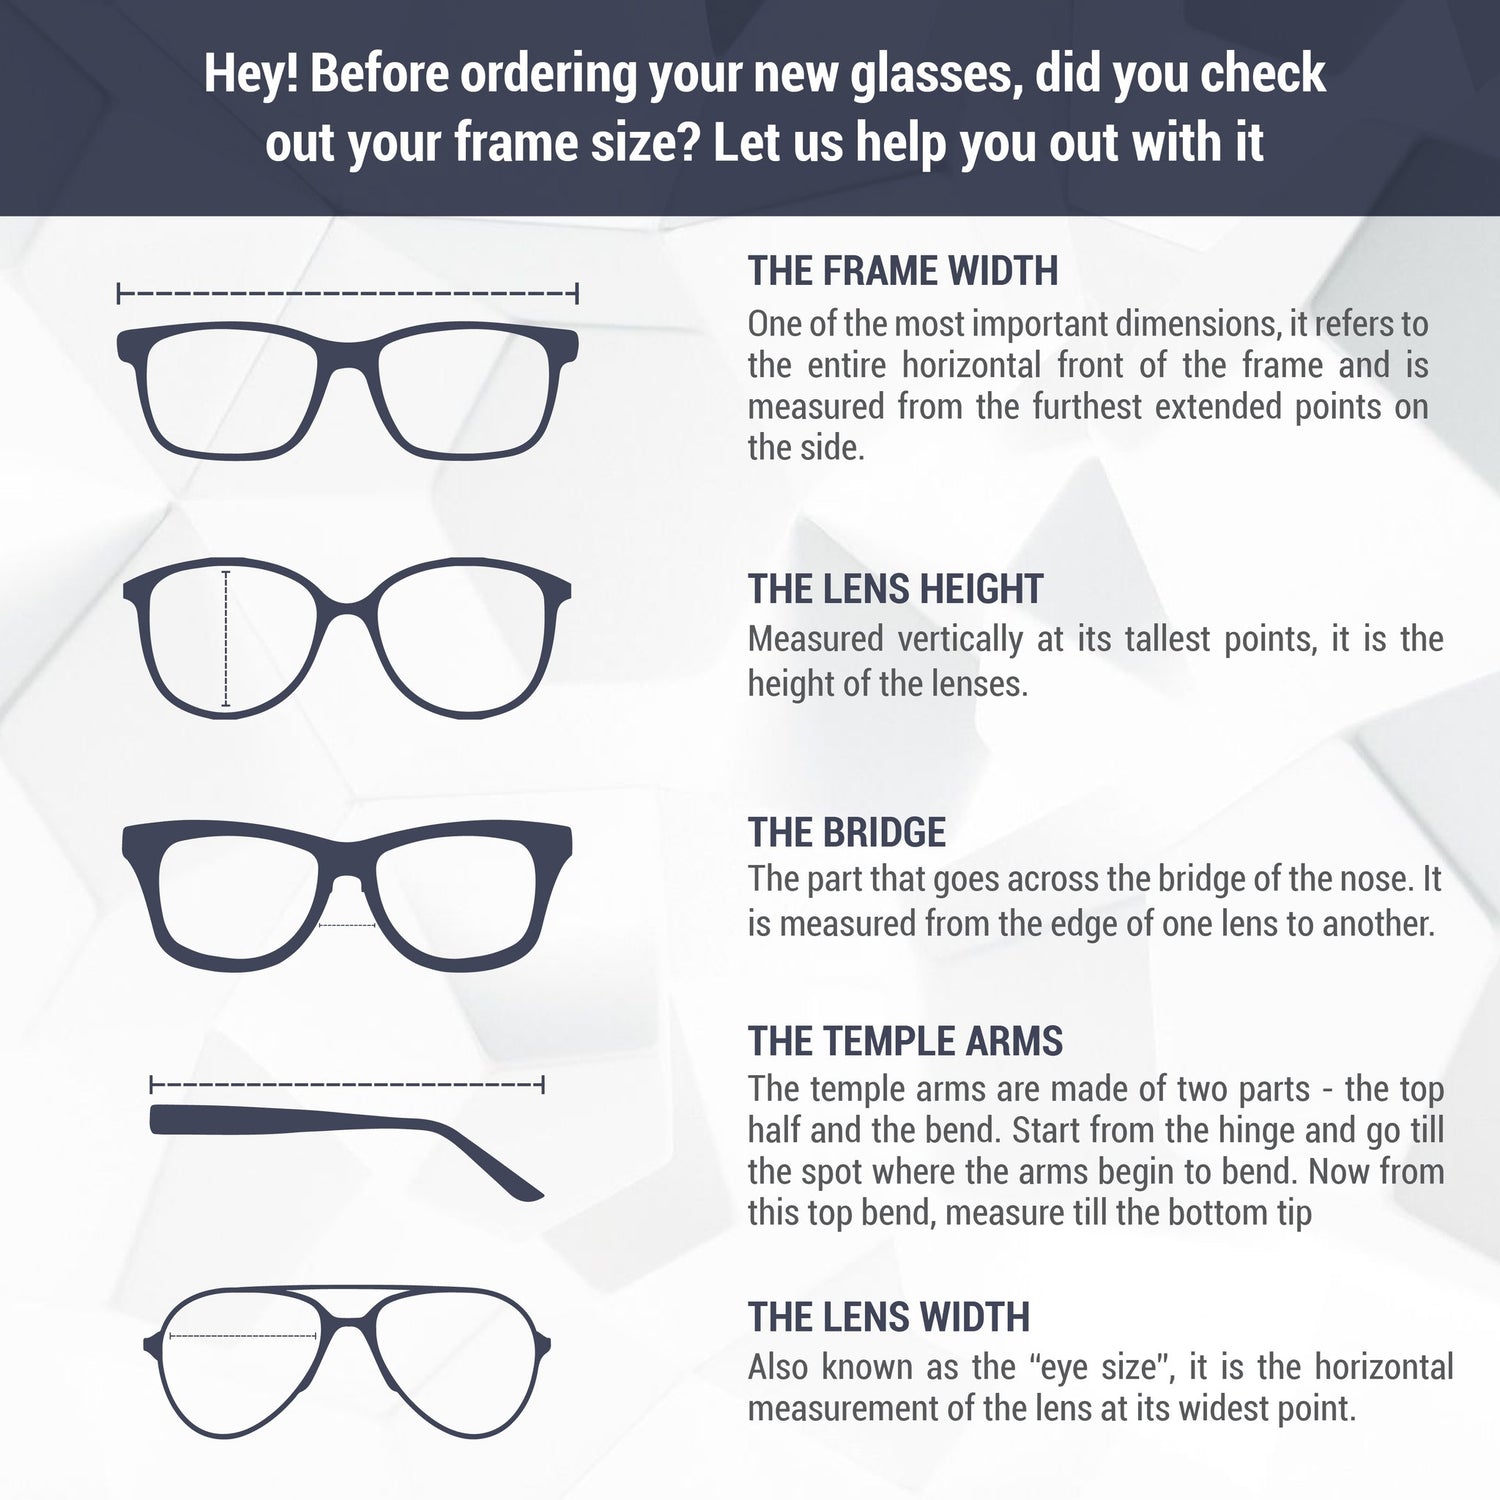 Monture de lunettes Chloé | Modèle CH0020